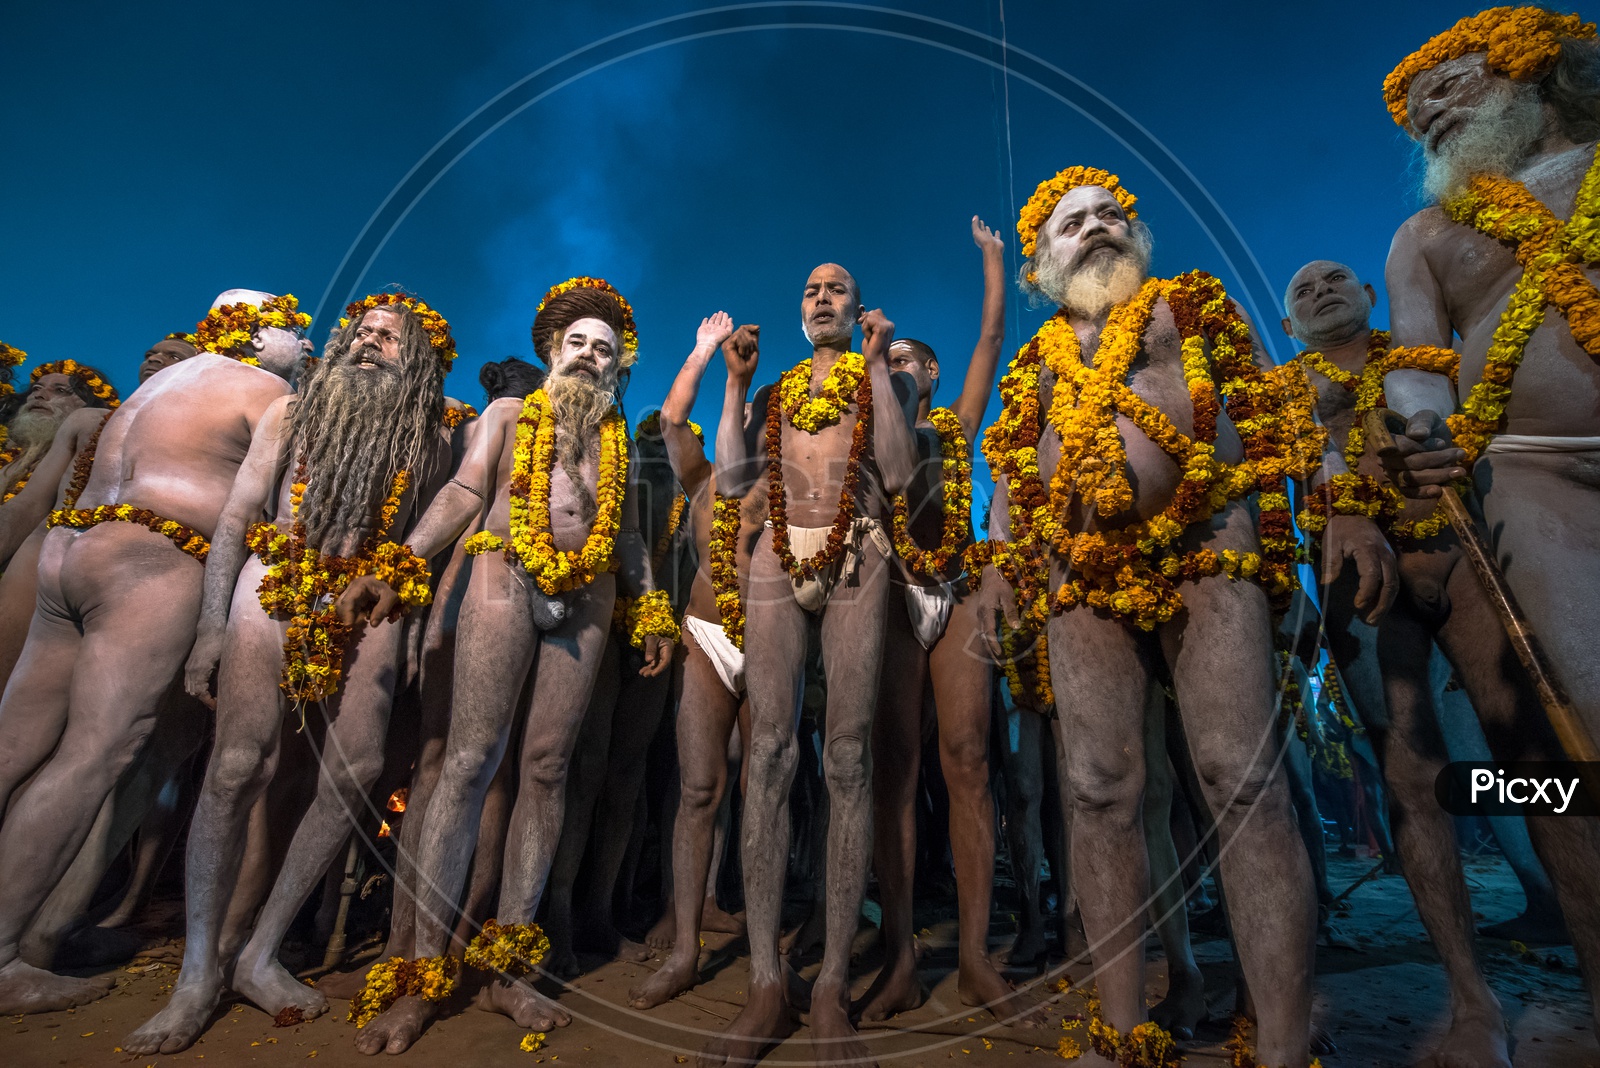 Indian Naga Sadhus Or Babas Or Aghoras  at Kumbh Mela